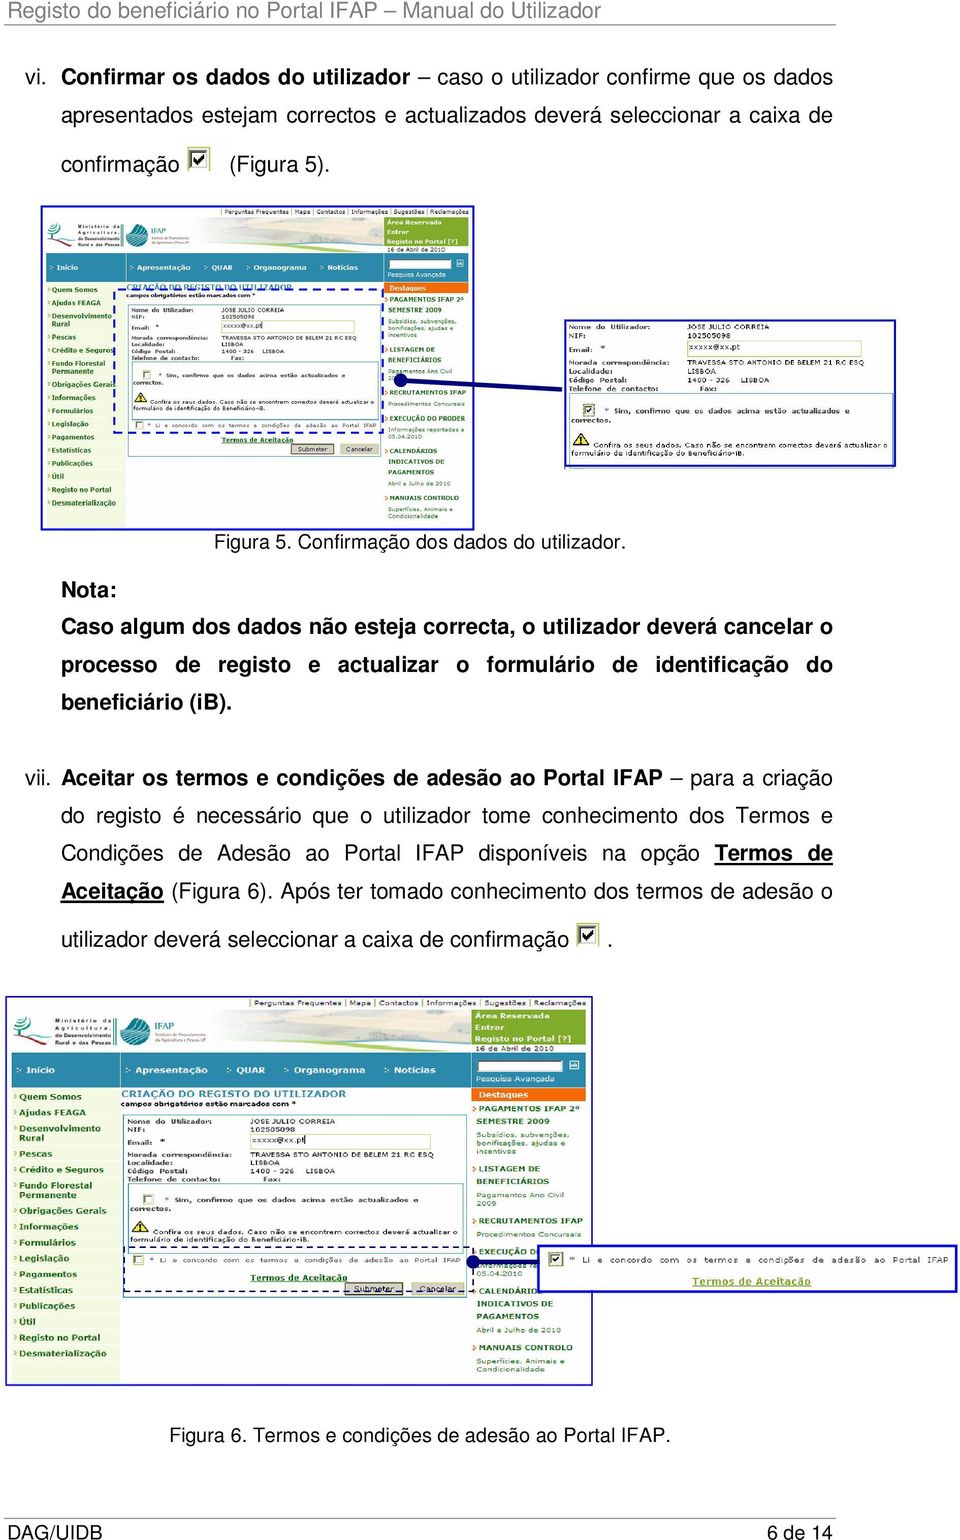 vii. Aceitar os termos e condições de adesão ao Portal IFAP para a criação do registo é necessário que o utilizador tome conhecimento dos Termos e Condições de Adesão ao Portal IFAP disponíveis na